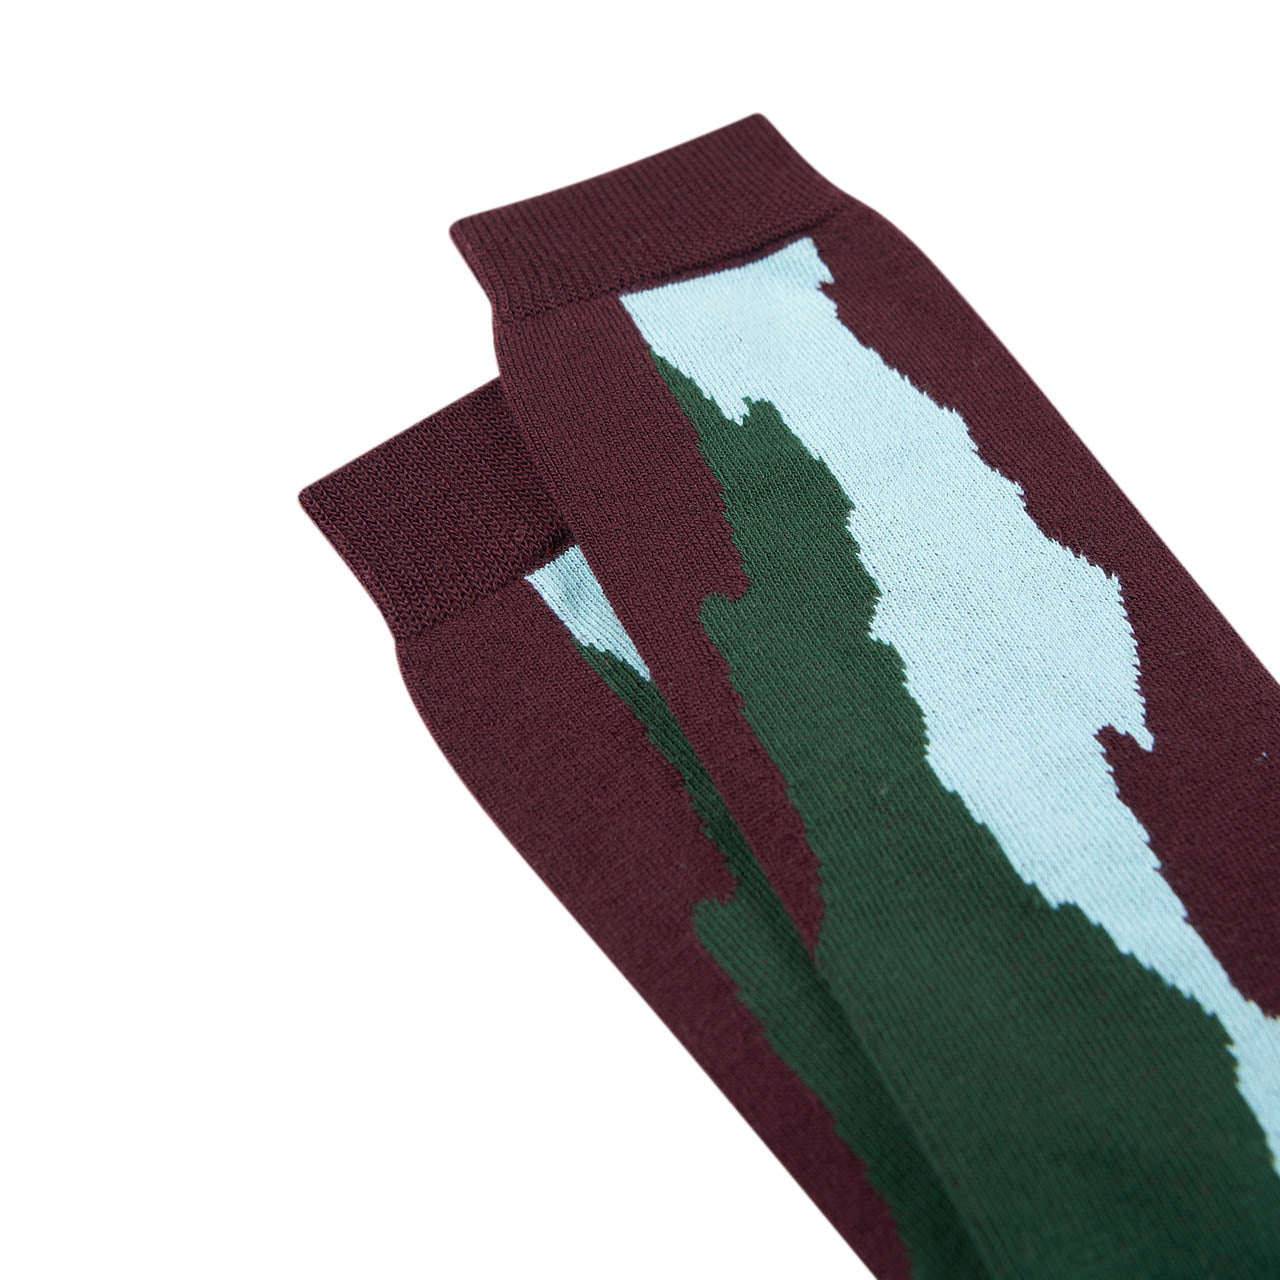 henrik vibskov wool cloud socks (rust / green / blue)